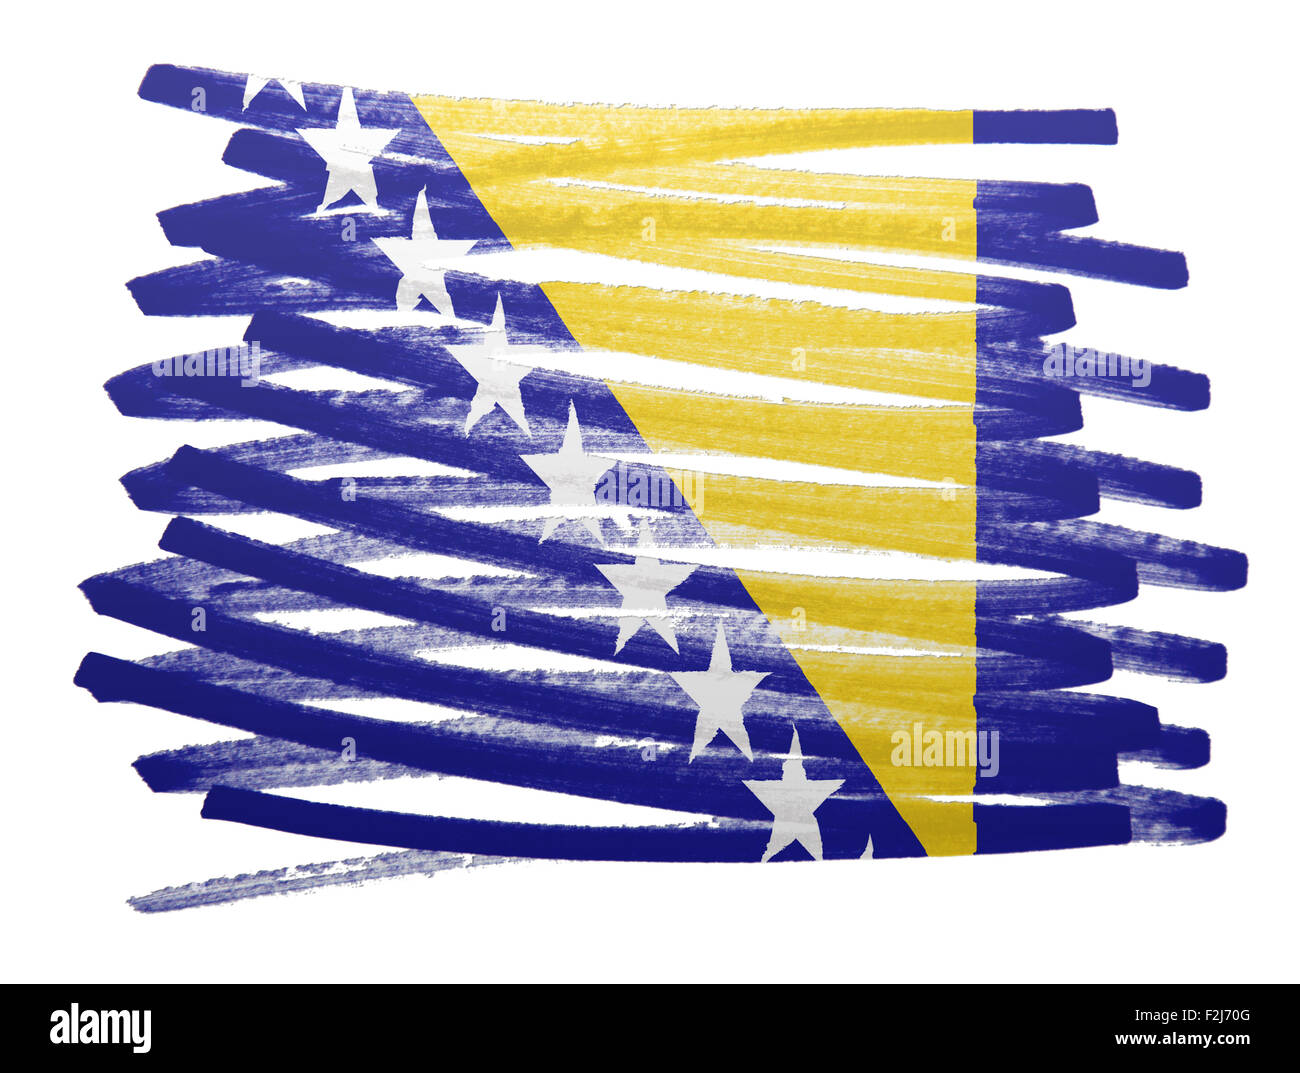 Flag illustration made with pen - Bosnia Herzegovina Stock Photo